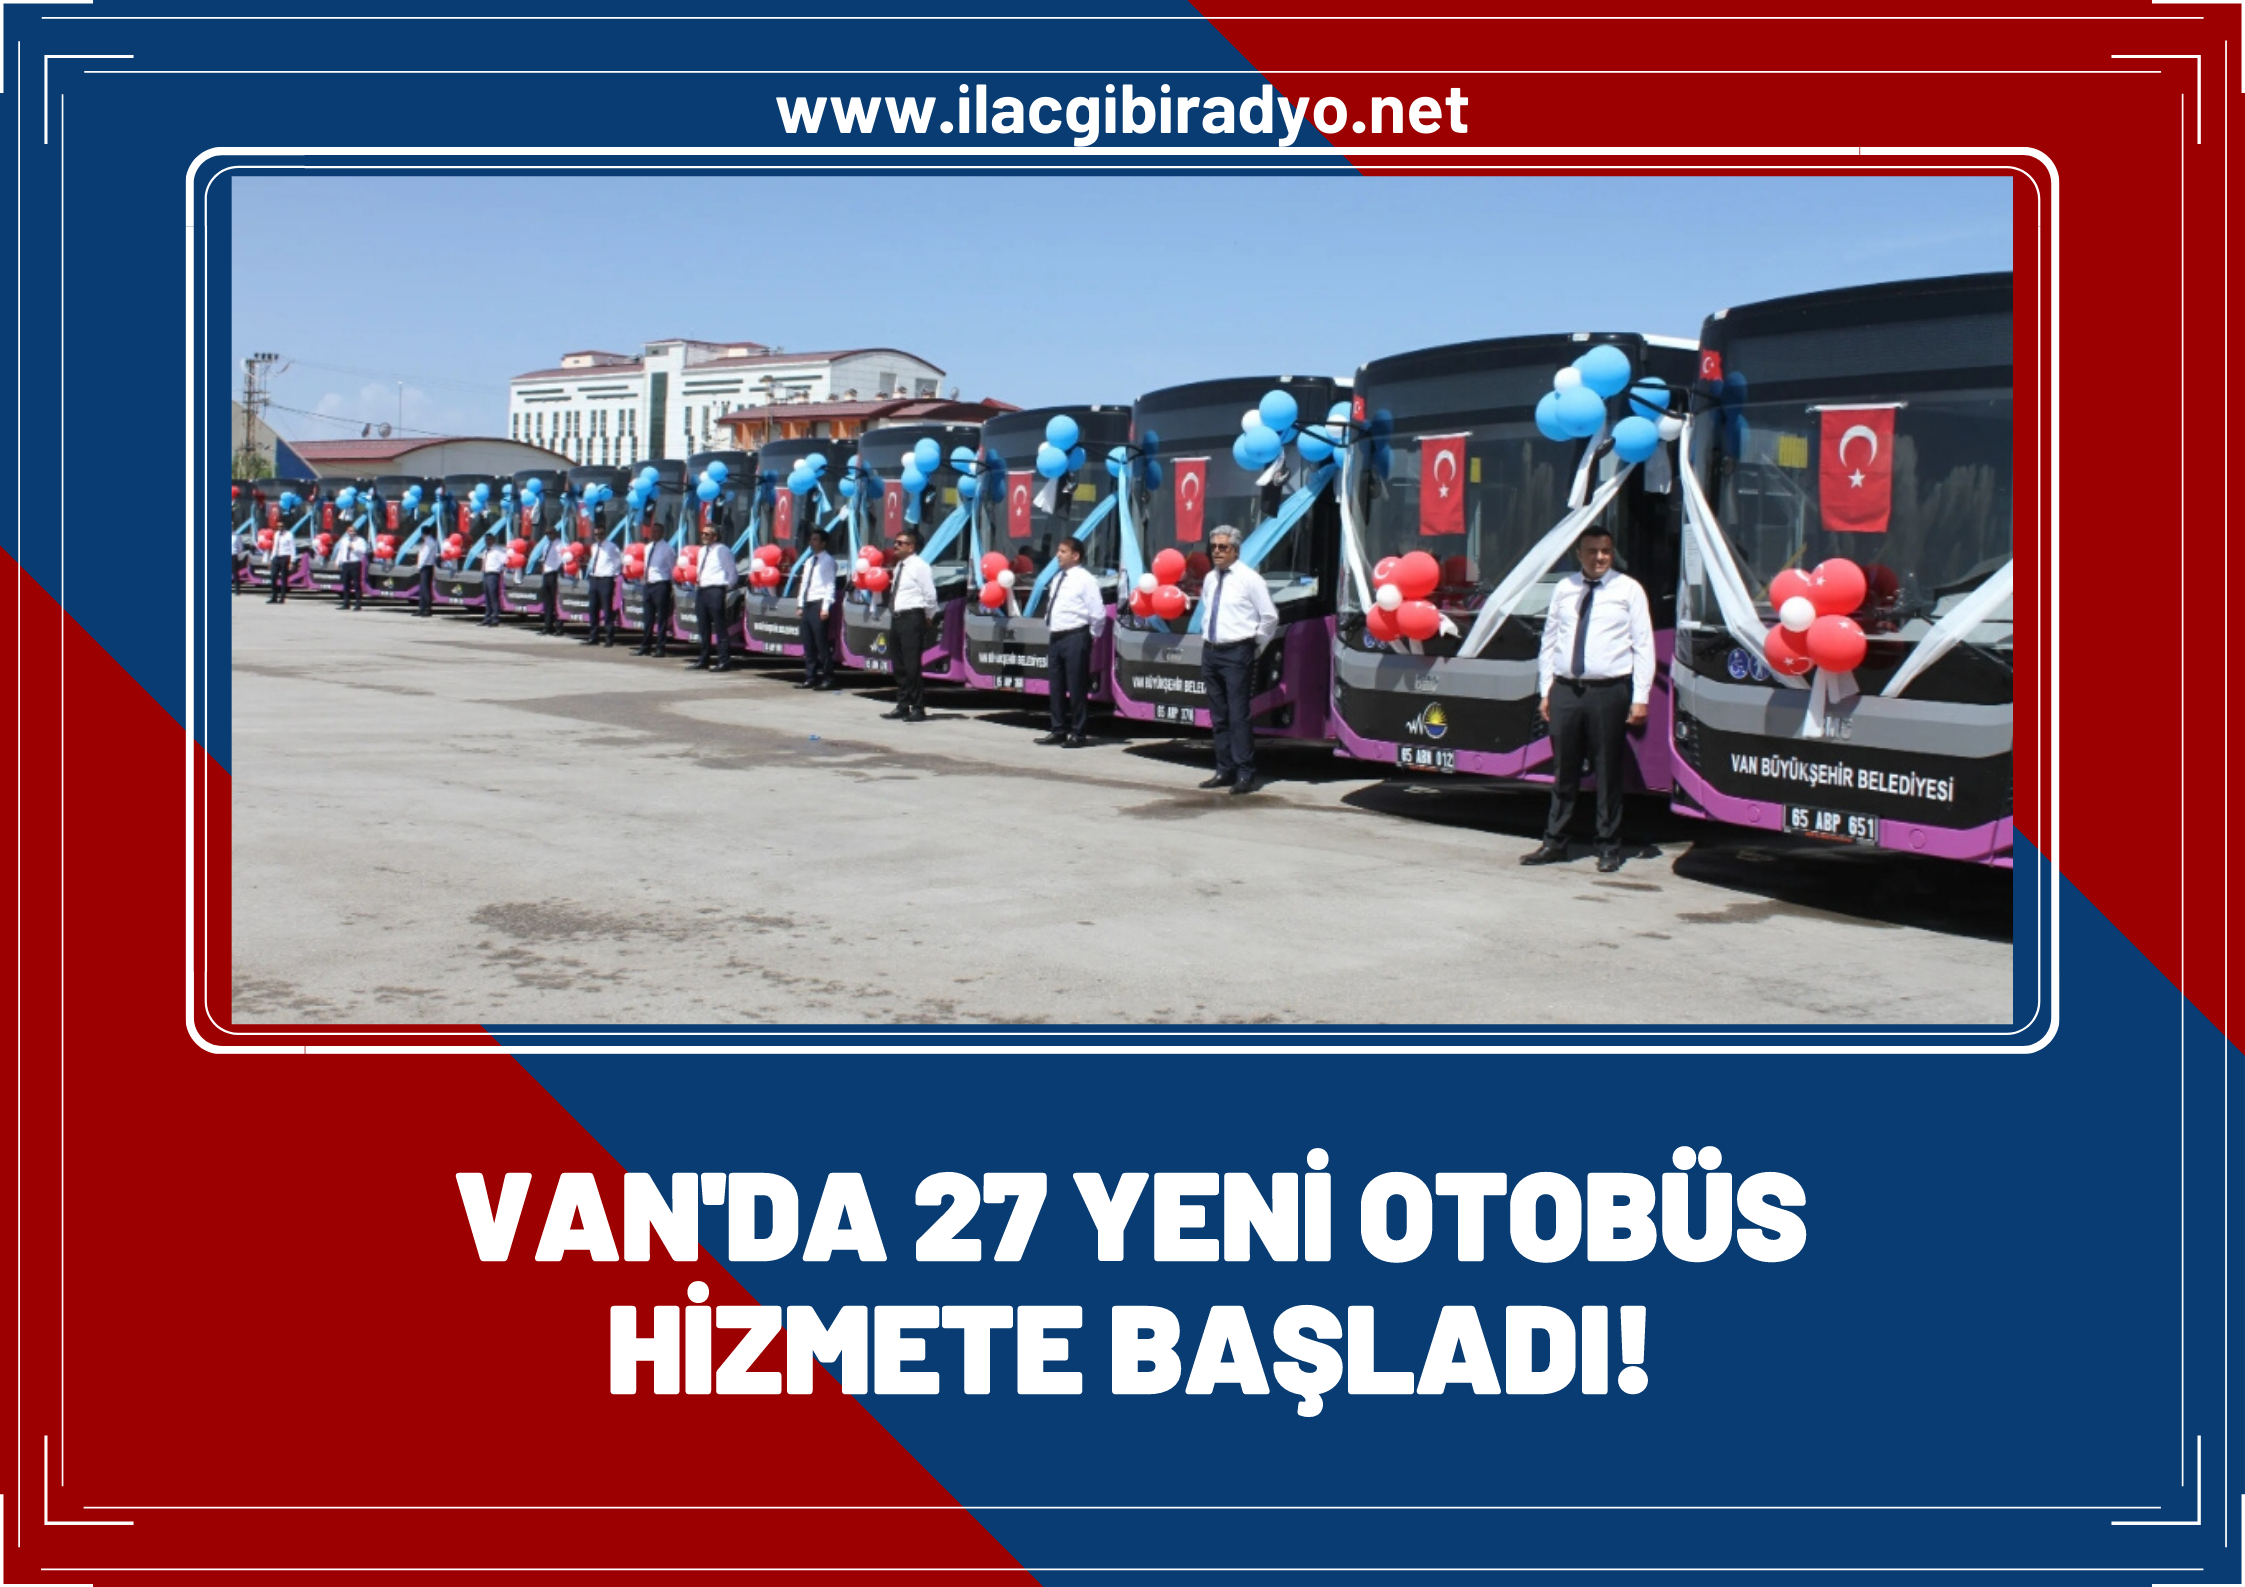 Van’da 27 yeni otobüs hizmete başladı